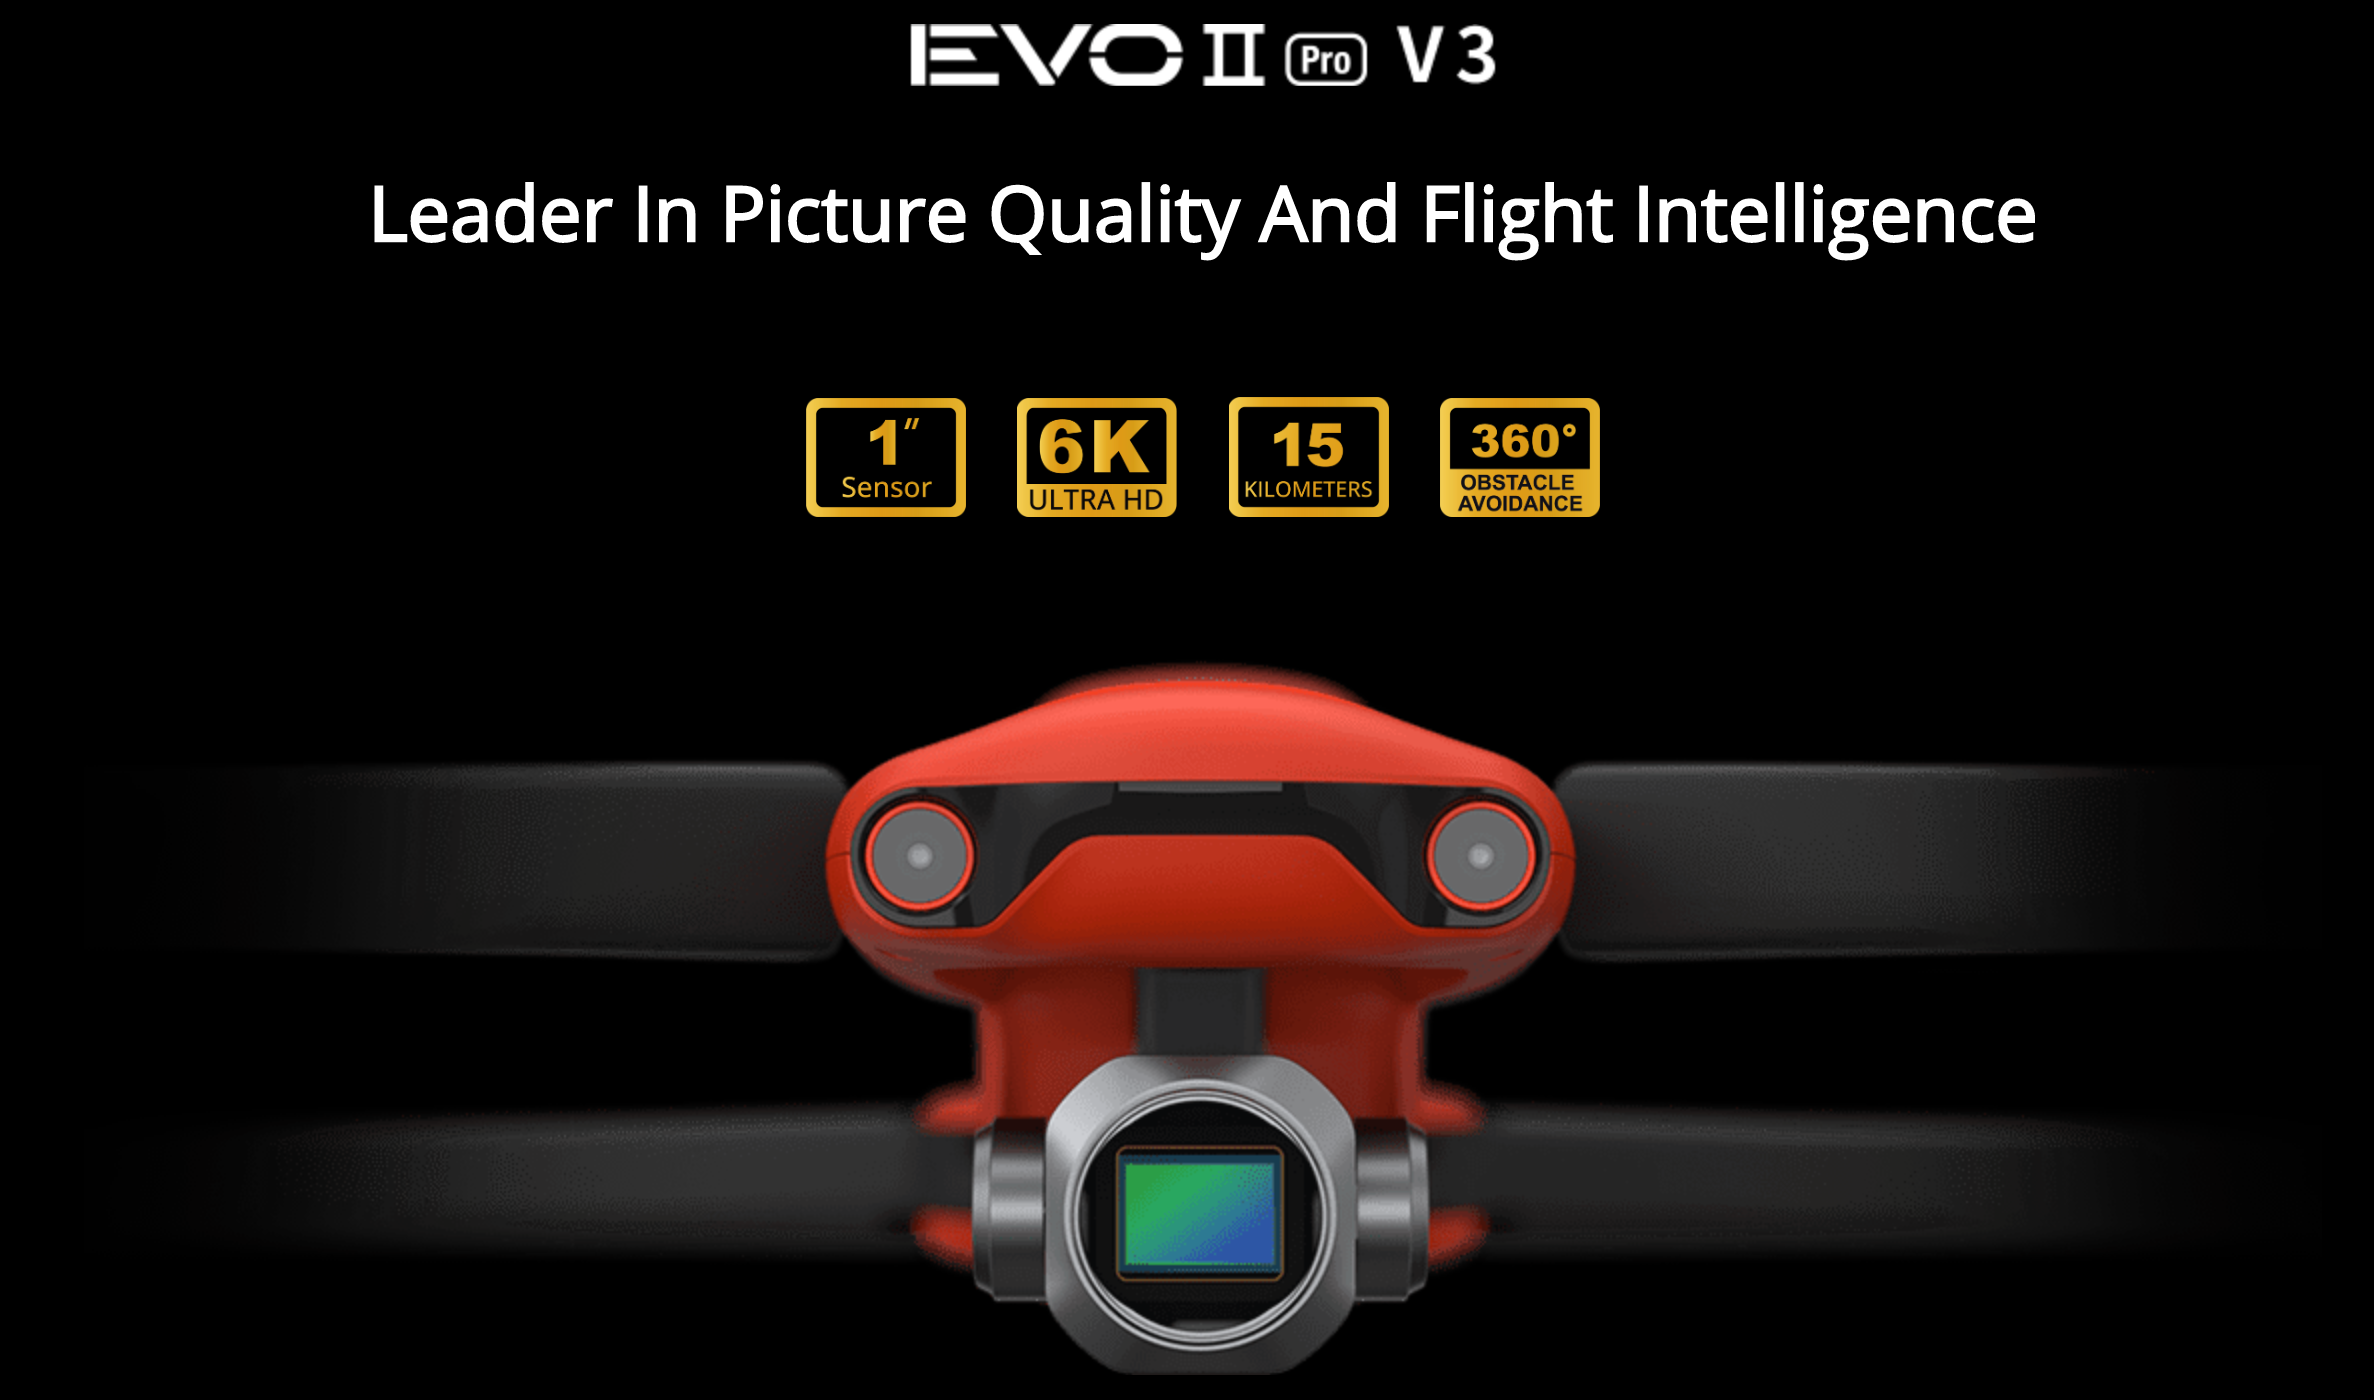 오텔드론 한국총판 덕유항공 Since 2018 Autel EVO II  Pro V3 1인치 센서 6K울트라 HD 15킬로미터 360도 장애물 회피기능